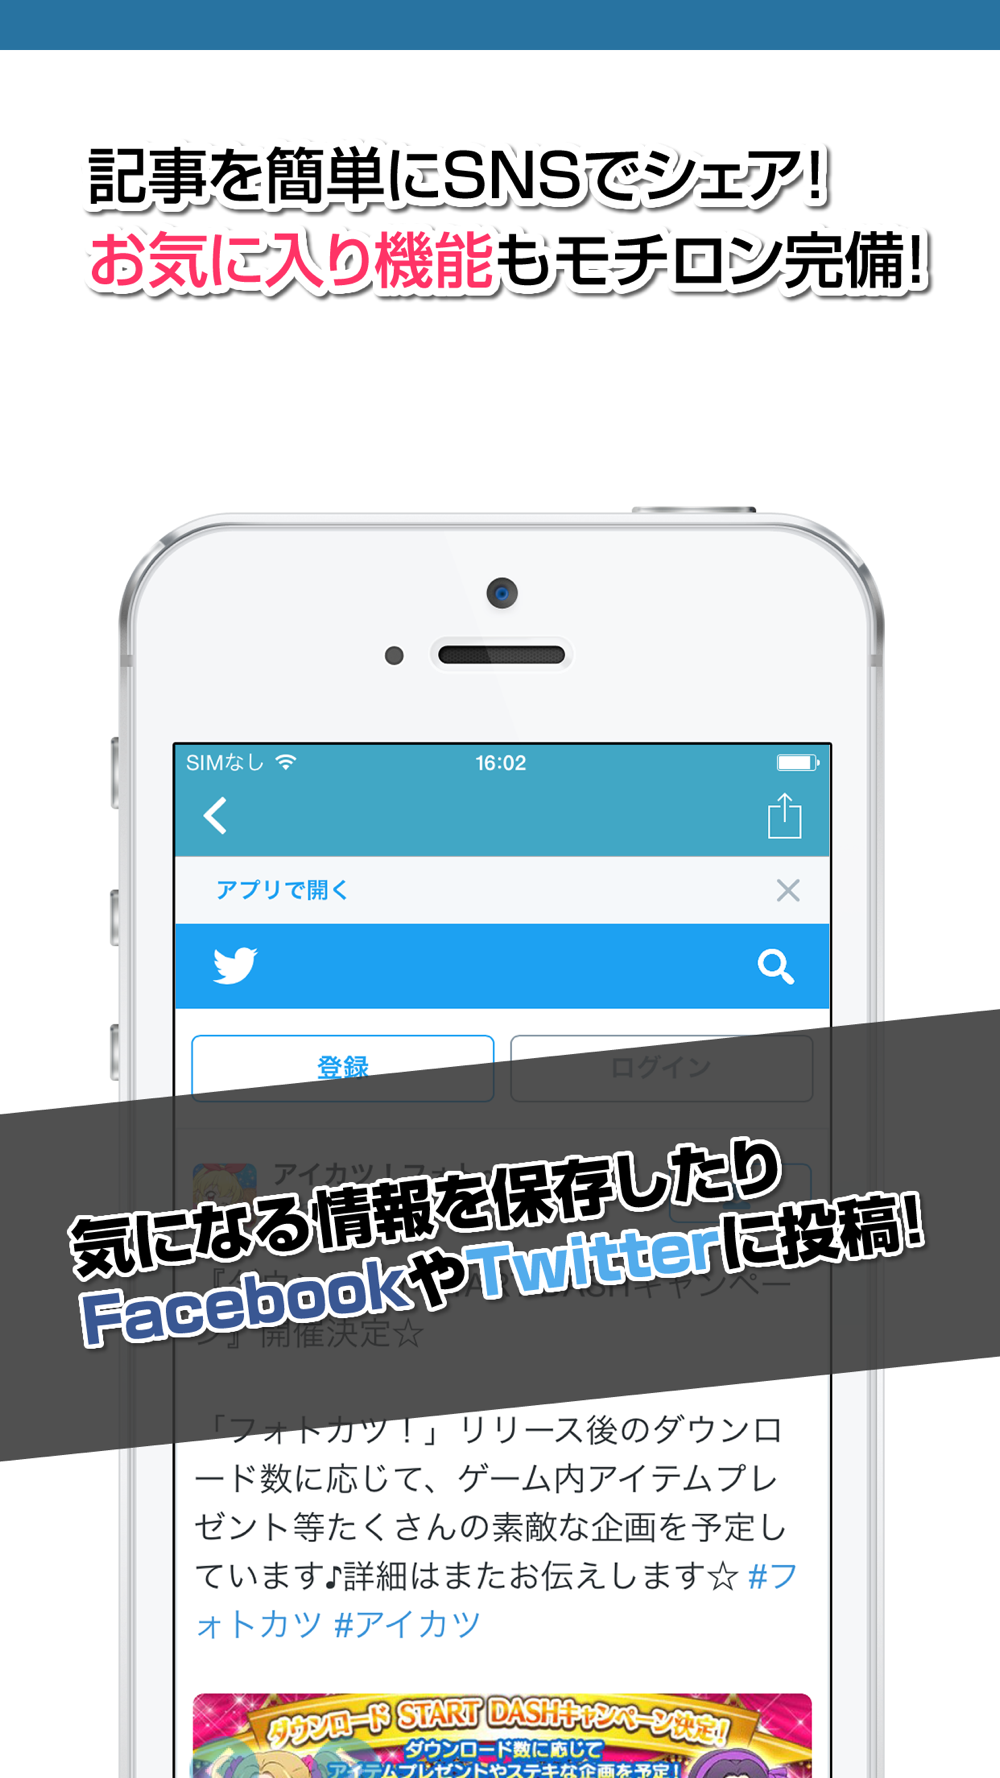 攻略ニュースまとめ For フォトカツアイカツ フォトonステージ Free Download App For Iphone Steprimo Com